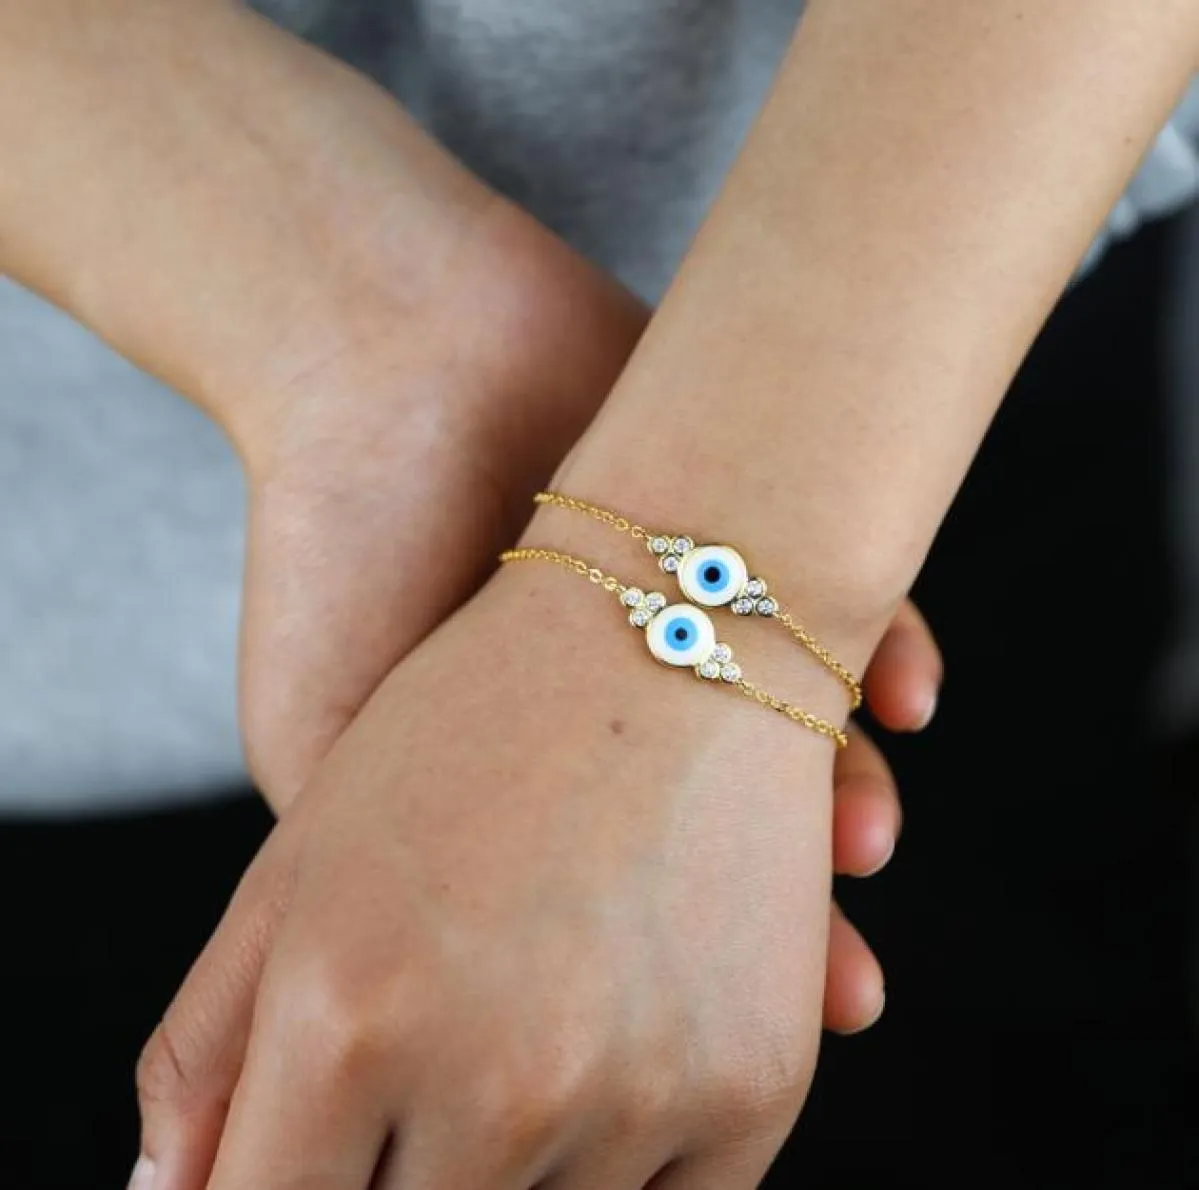 Promozione color oro moda donna gioielli bianco blu smalto malocchio fascino ragazza fortunata braccialetto gioielli donna9015829